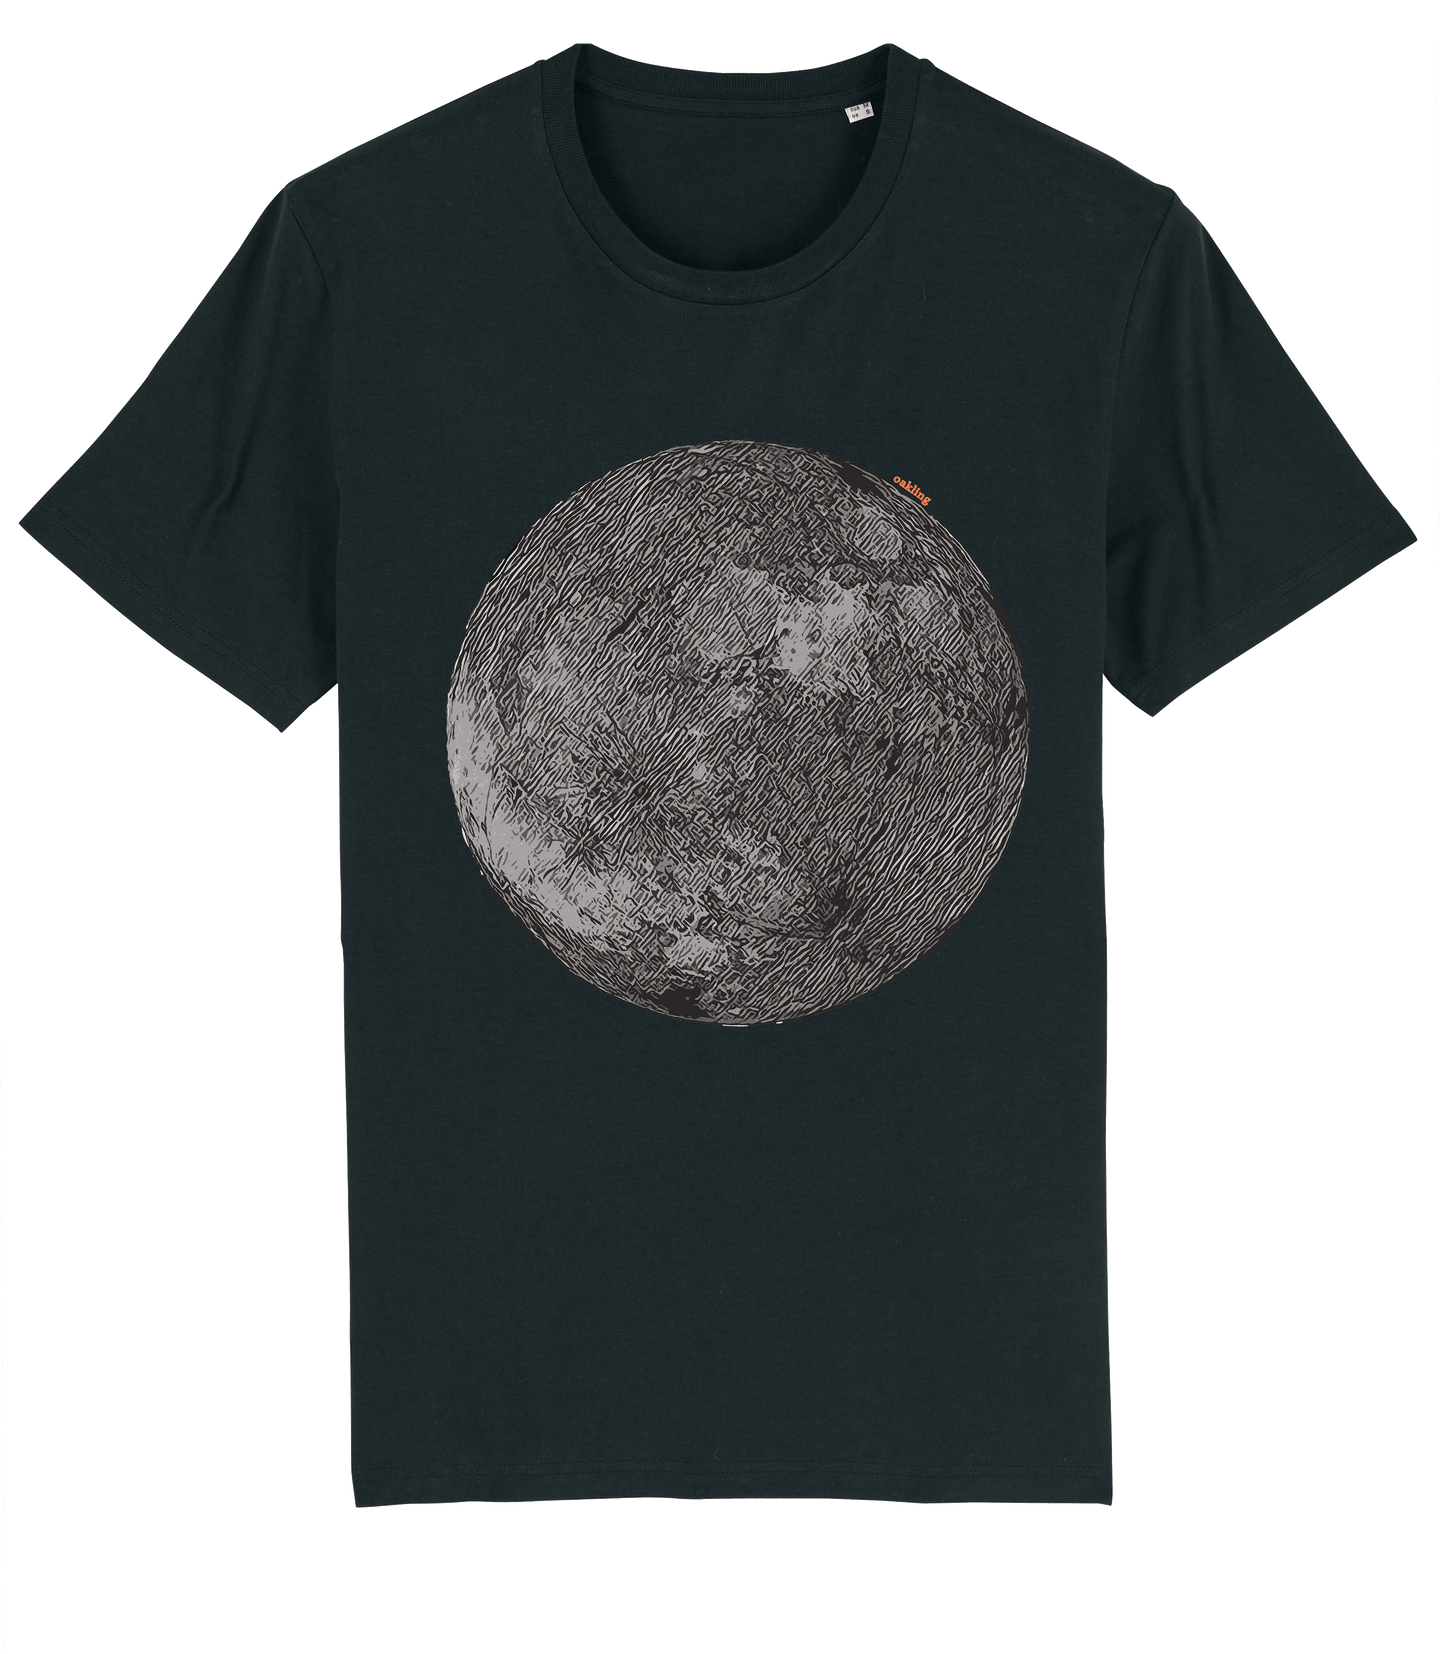 Organic Shirt - The Black Moon